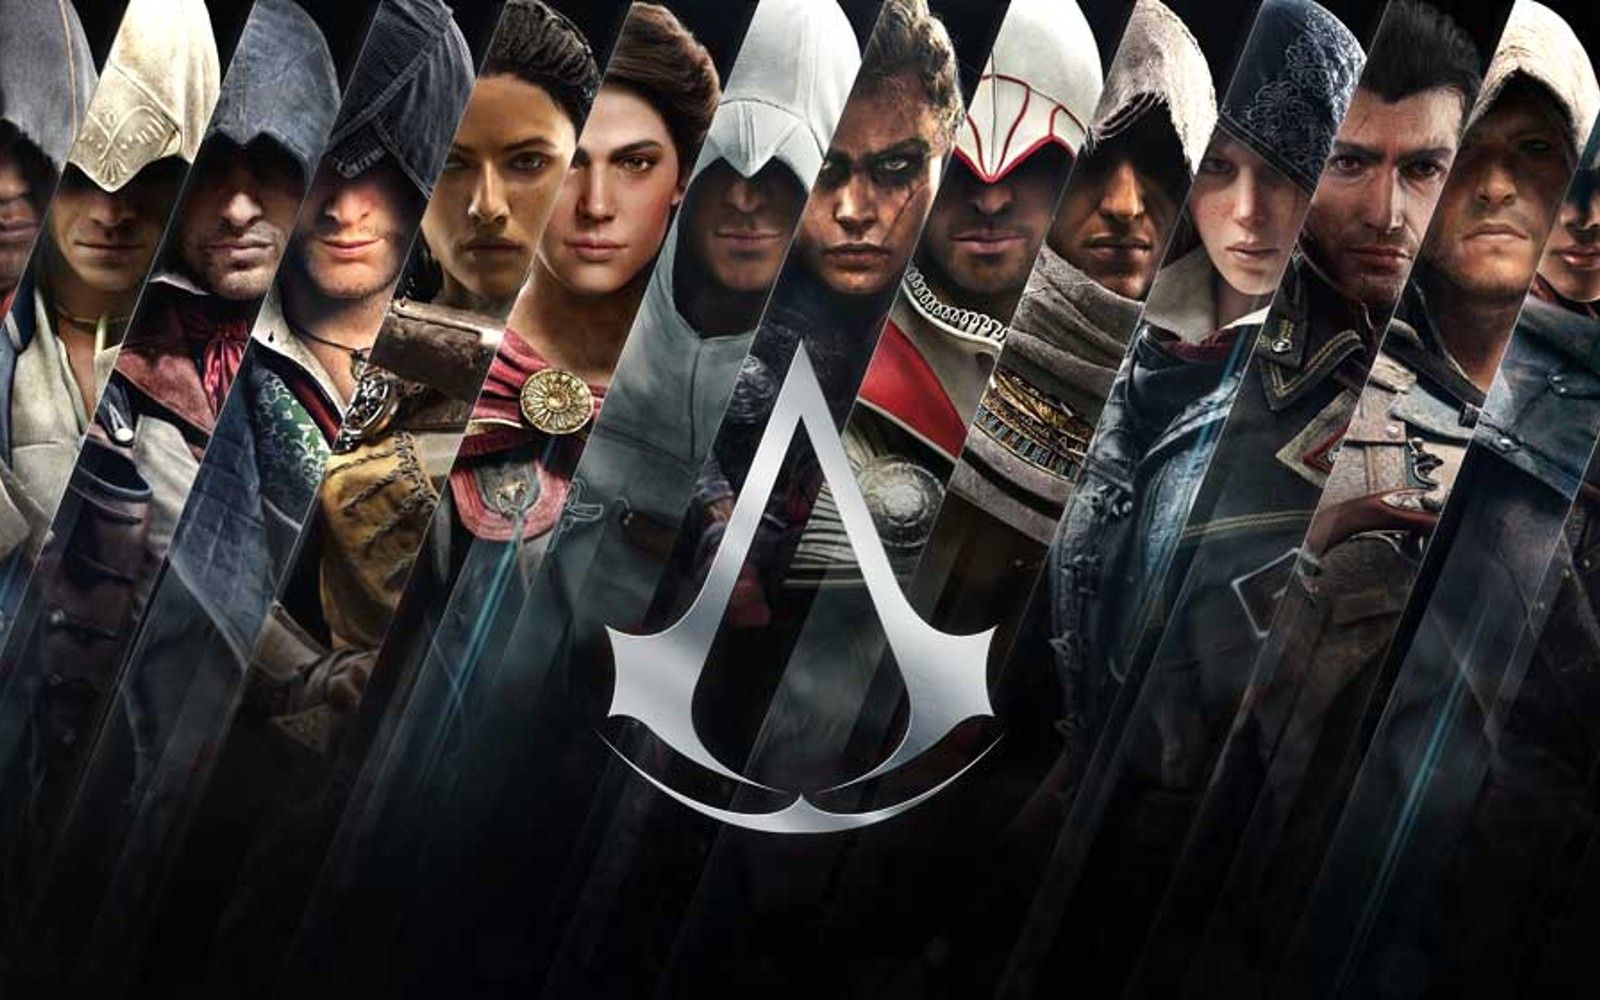 Imagens dos muitos protagonistas da franquia Assassin's Creed vistos alinhados um ao lado do outro atrás do símbolo da franquia.